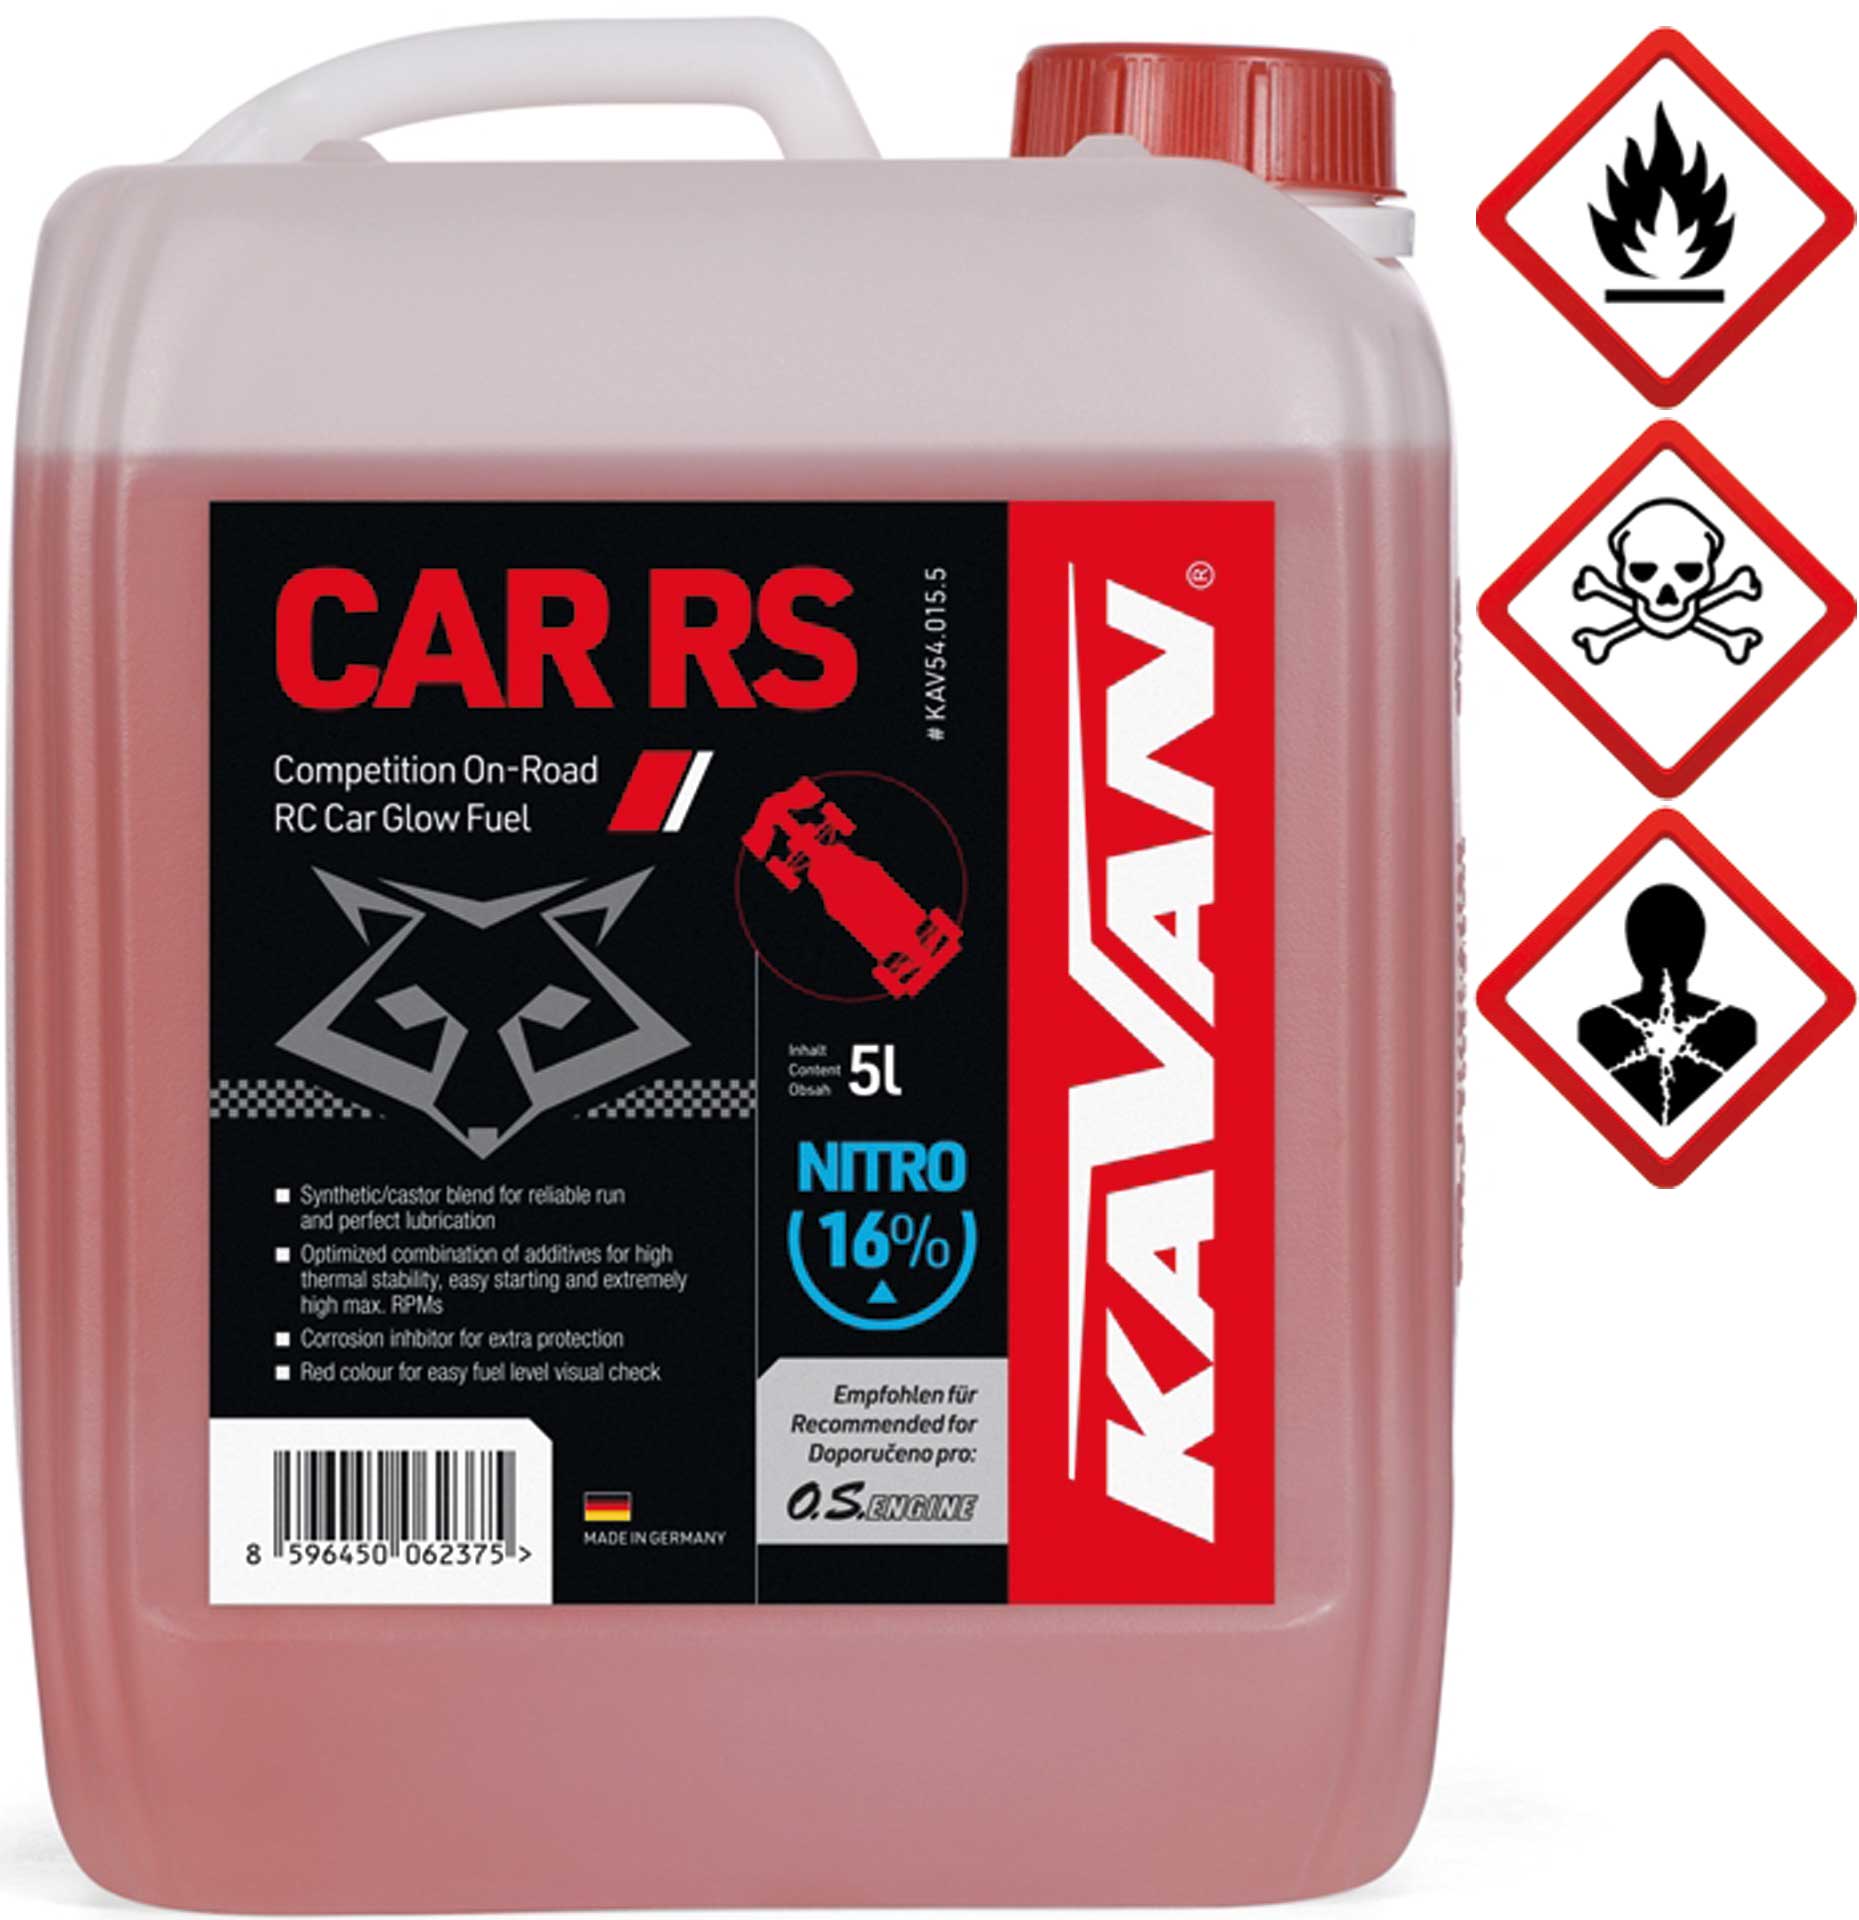 KAVAN Car RS 16% On Road Nitro 5 litres Carburant, essence, carburant pour moteurs à allumage par incandescence